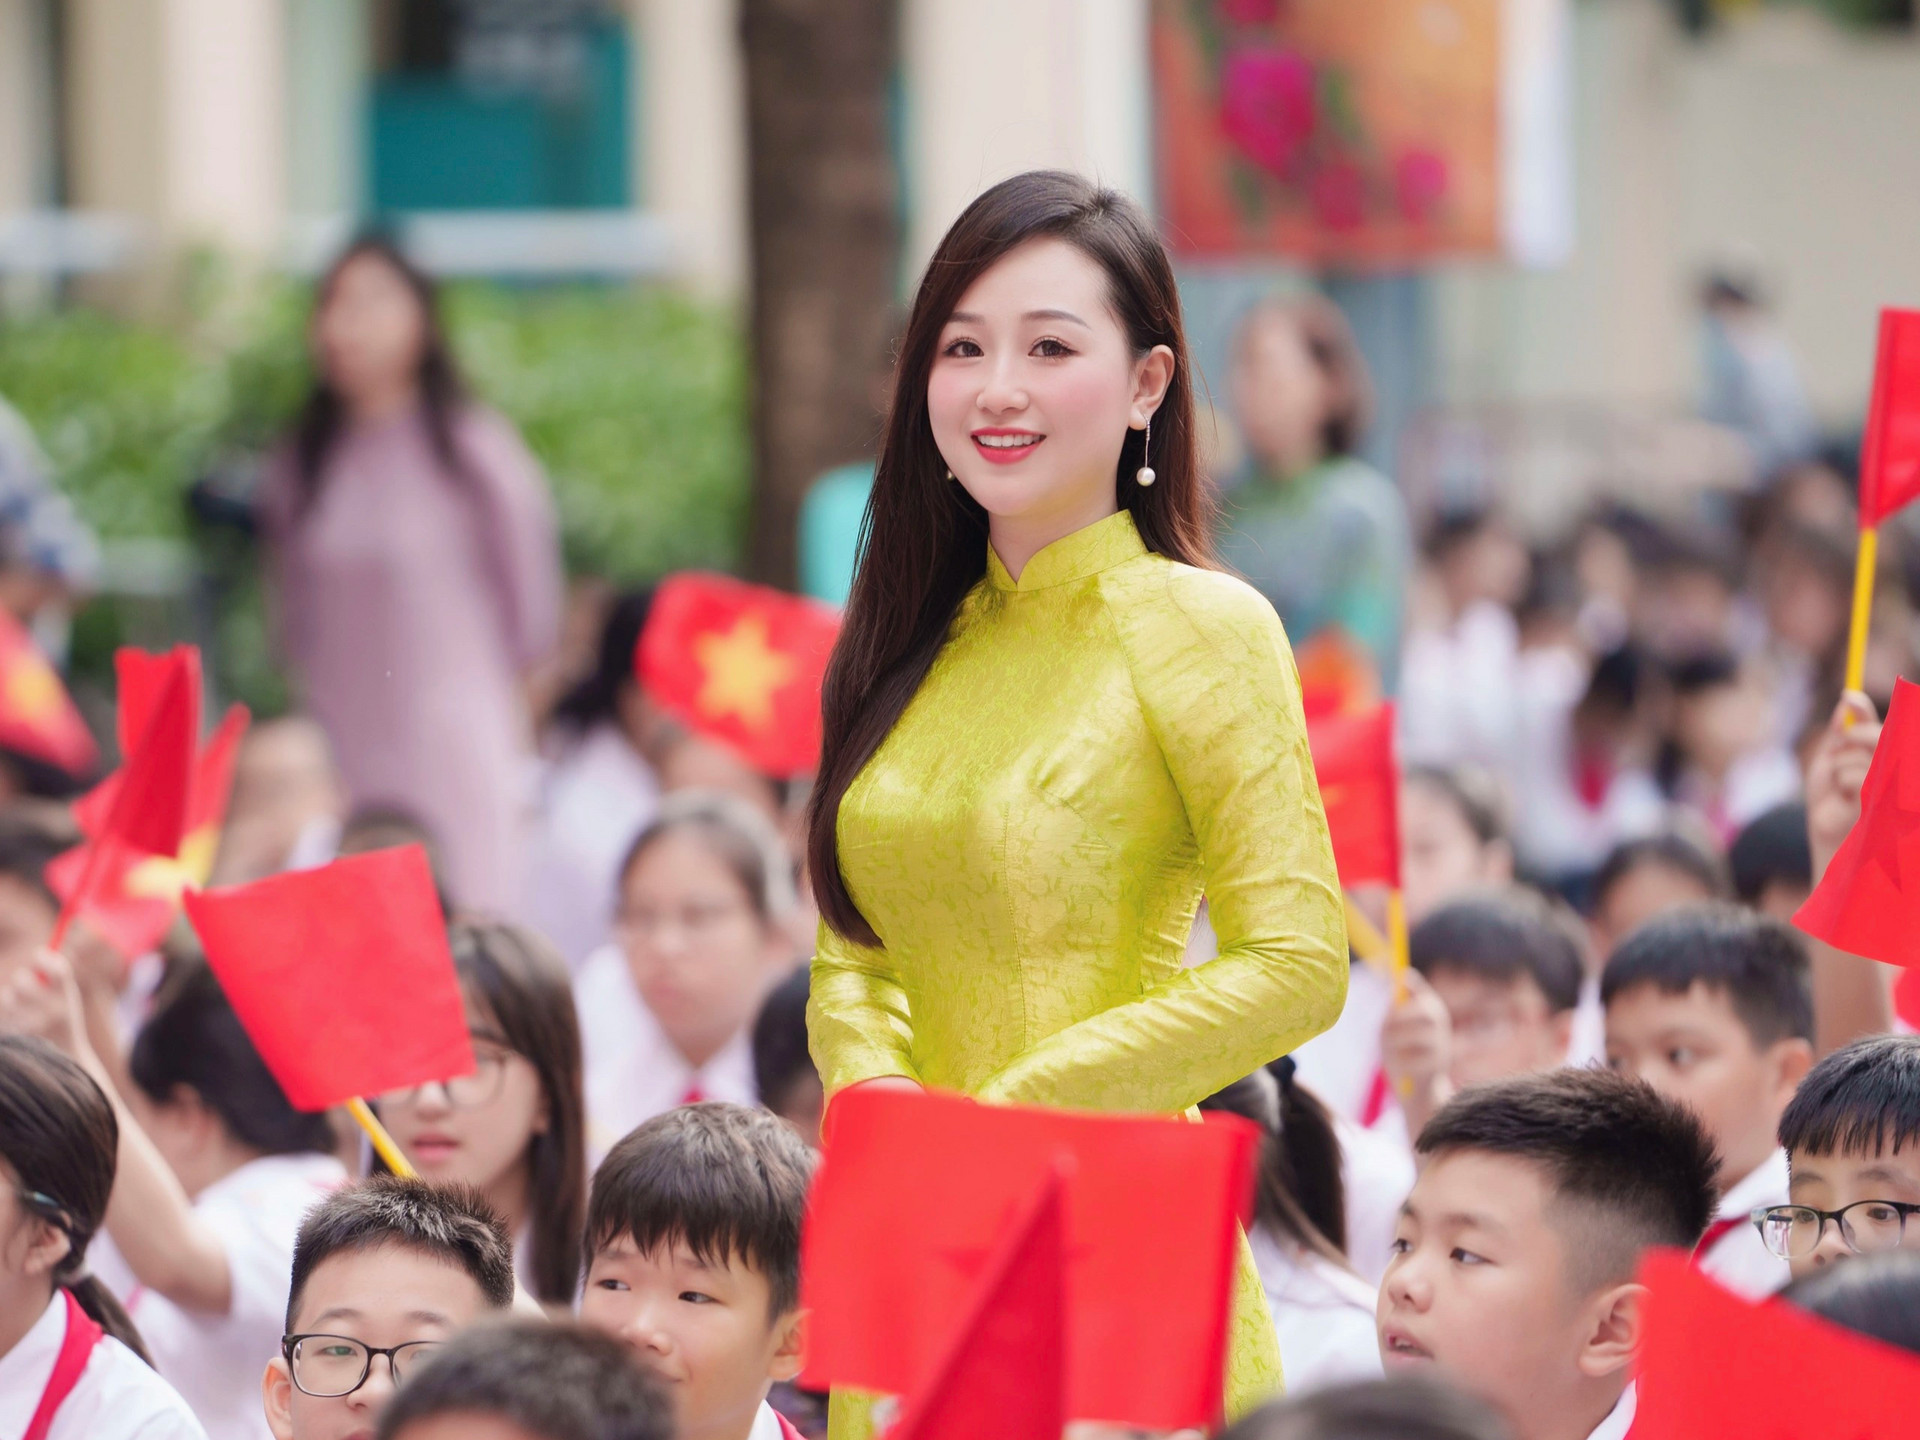 Cô giáo ở Hà Nội bất ngờ nổi tiếng sau lễ khai giảng vì xinh như hot girl - 1